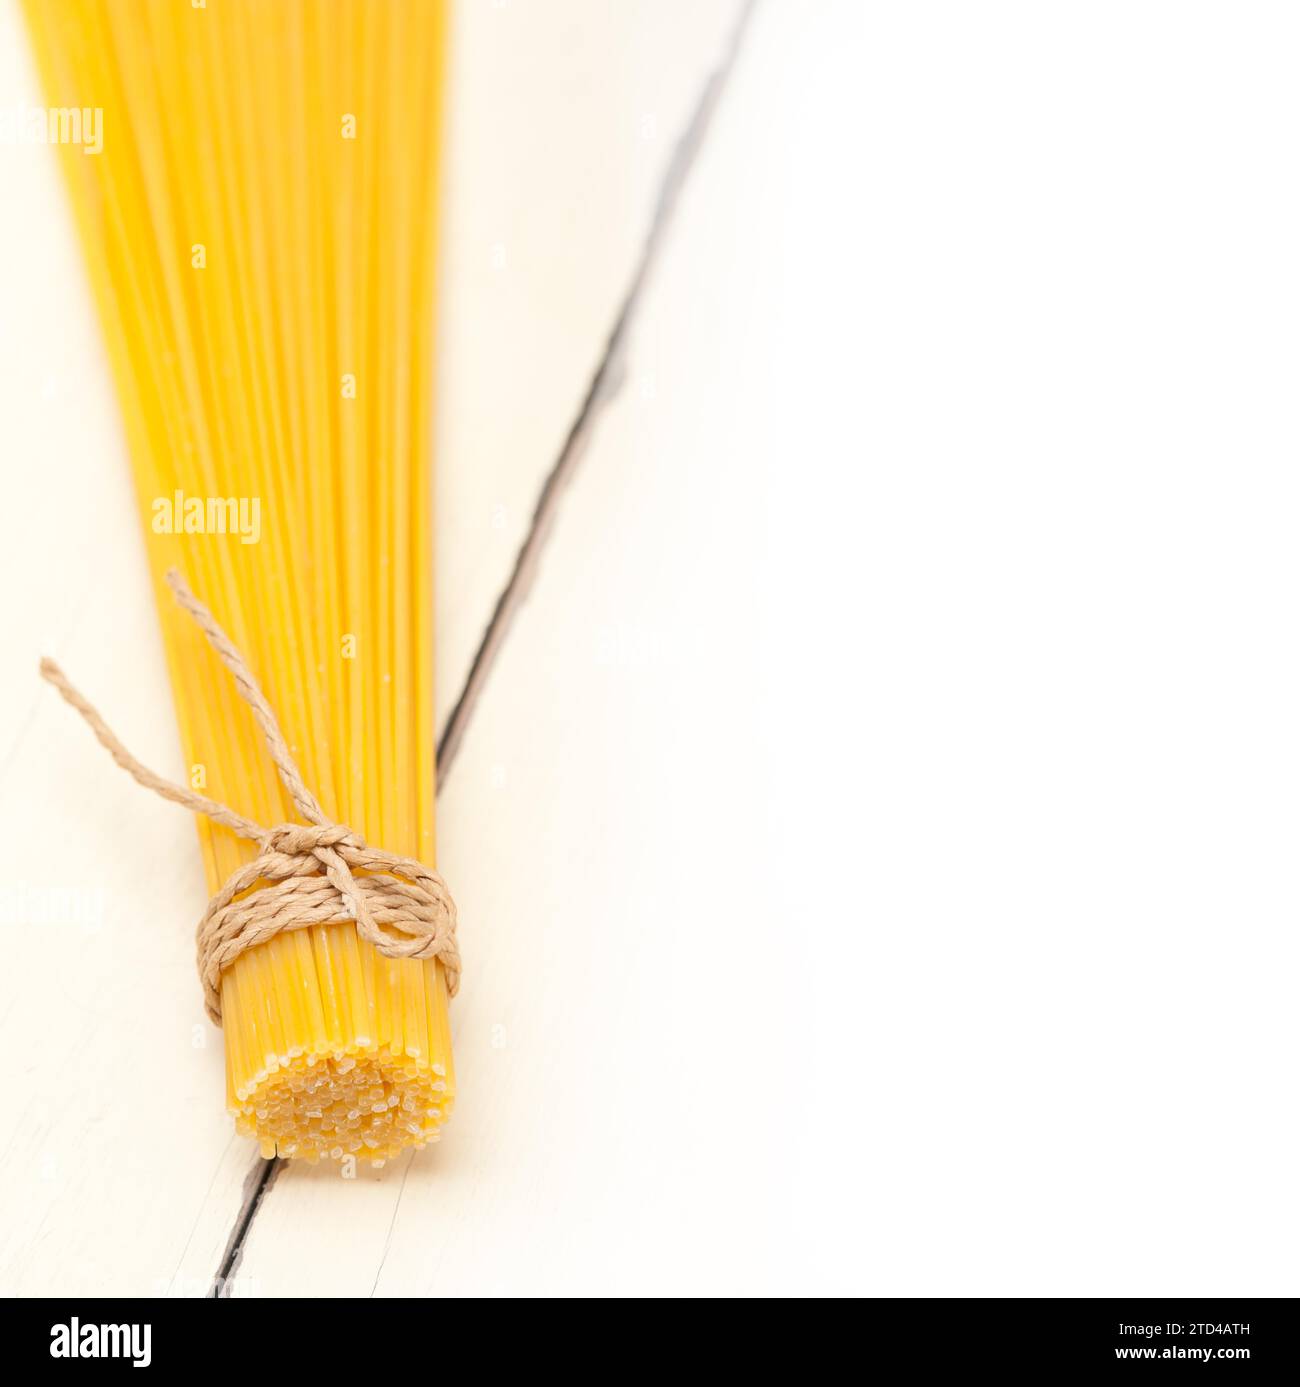 Las pastas italianas espaguetis atados con una cuerda en una tabla rústica Foto de stock